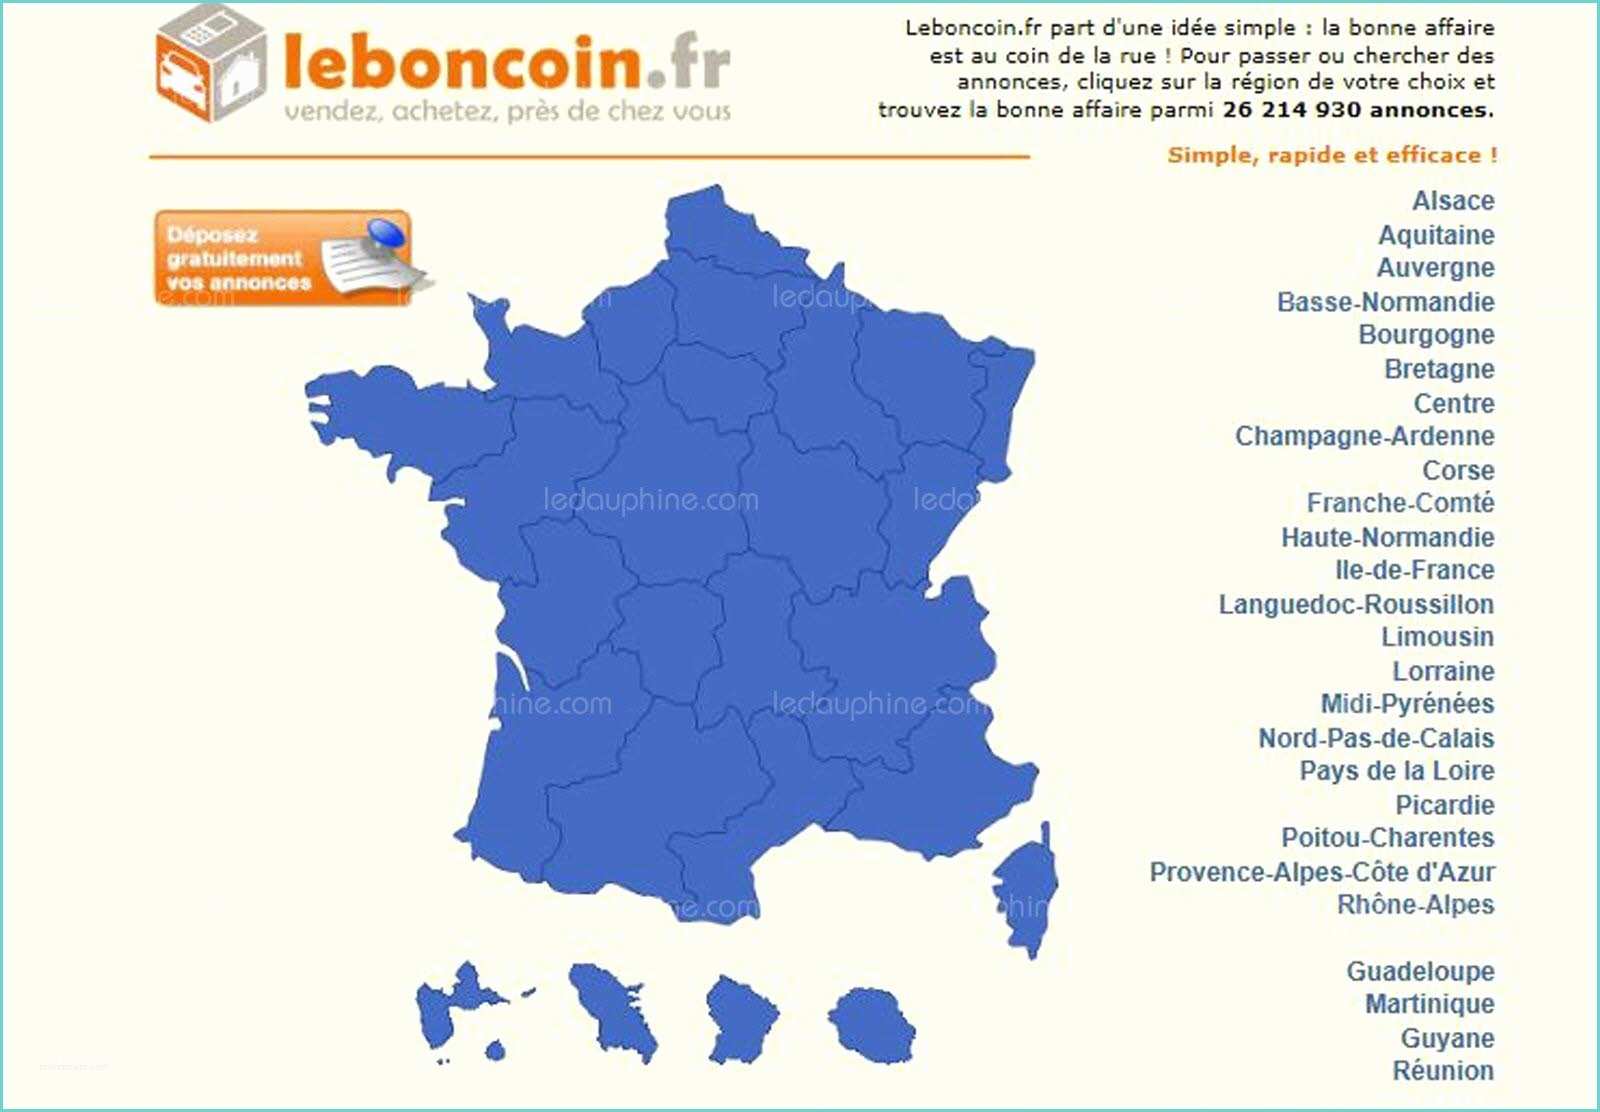 Le Bon Coin Pays De Loire Ameublement Le Bon Coin 44 Pays De Loire